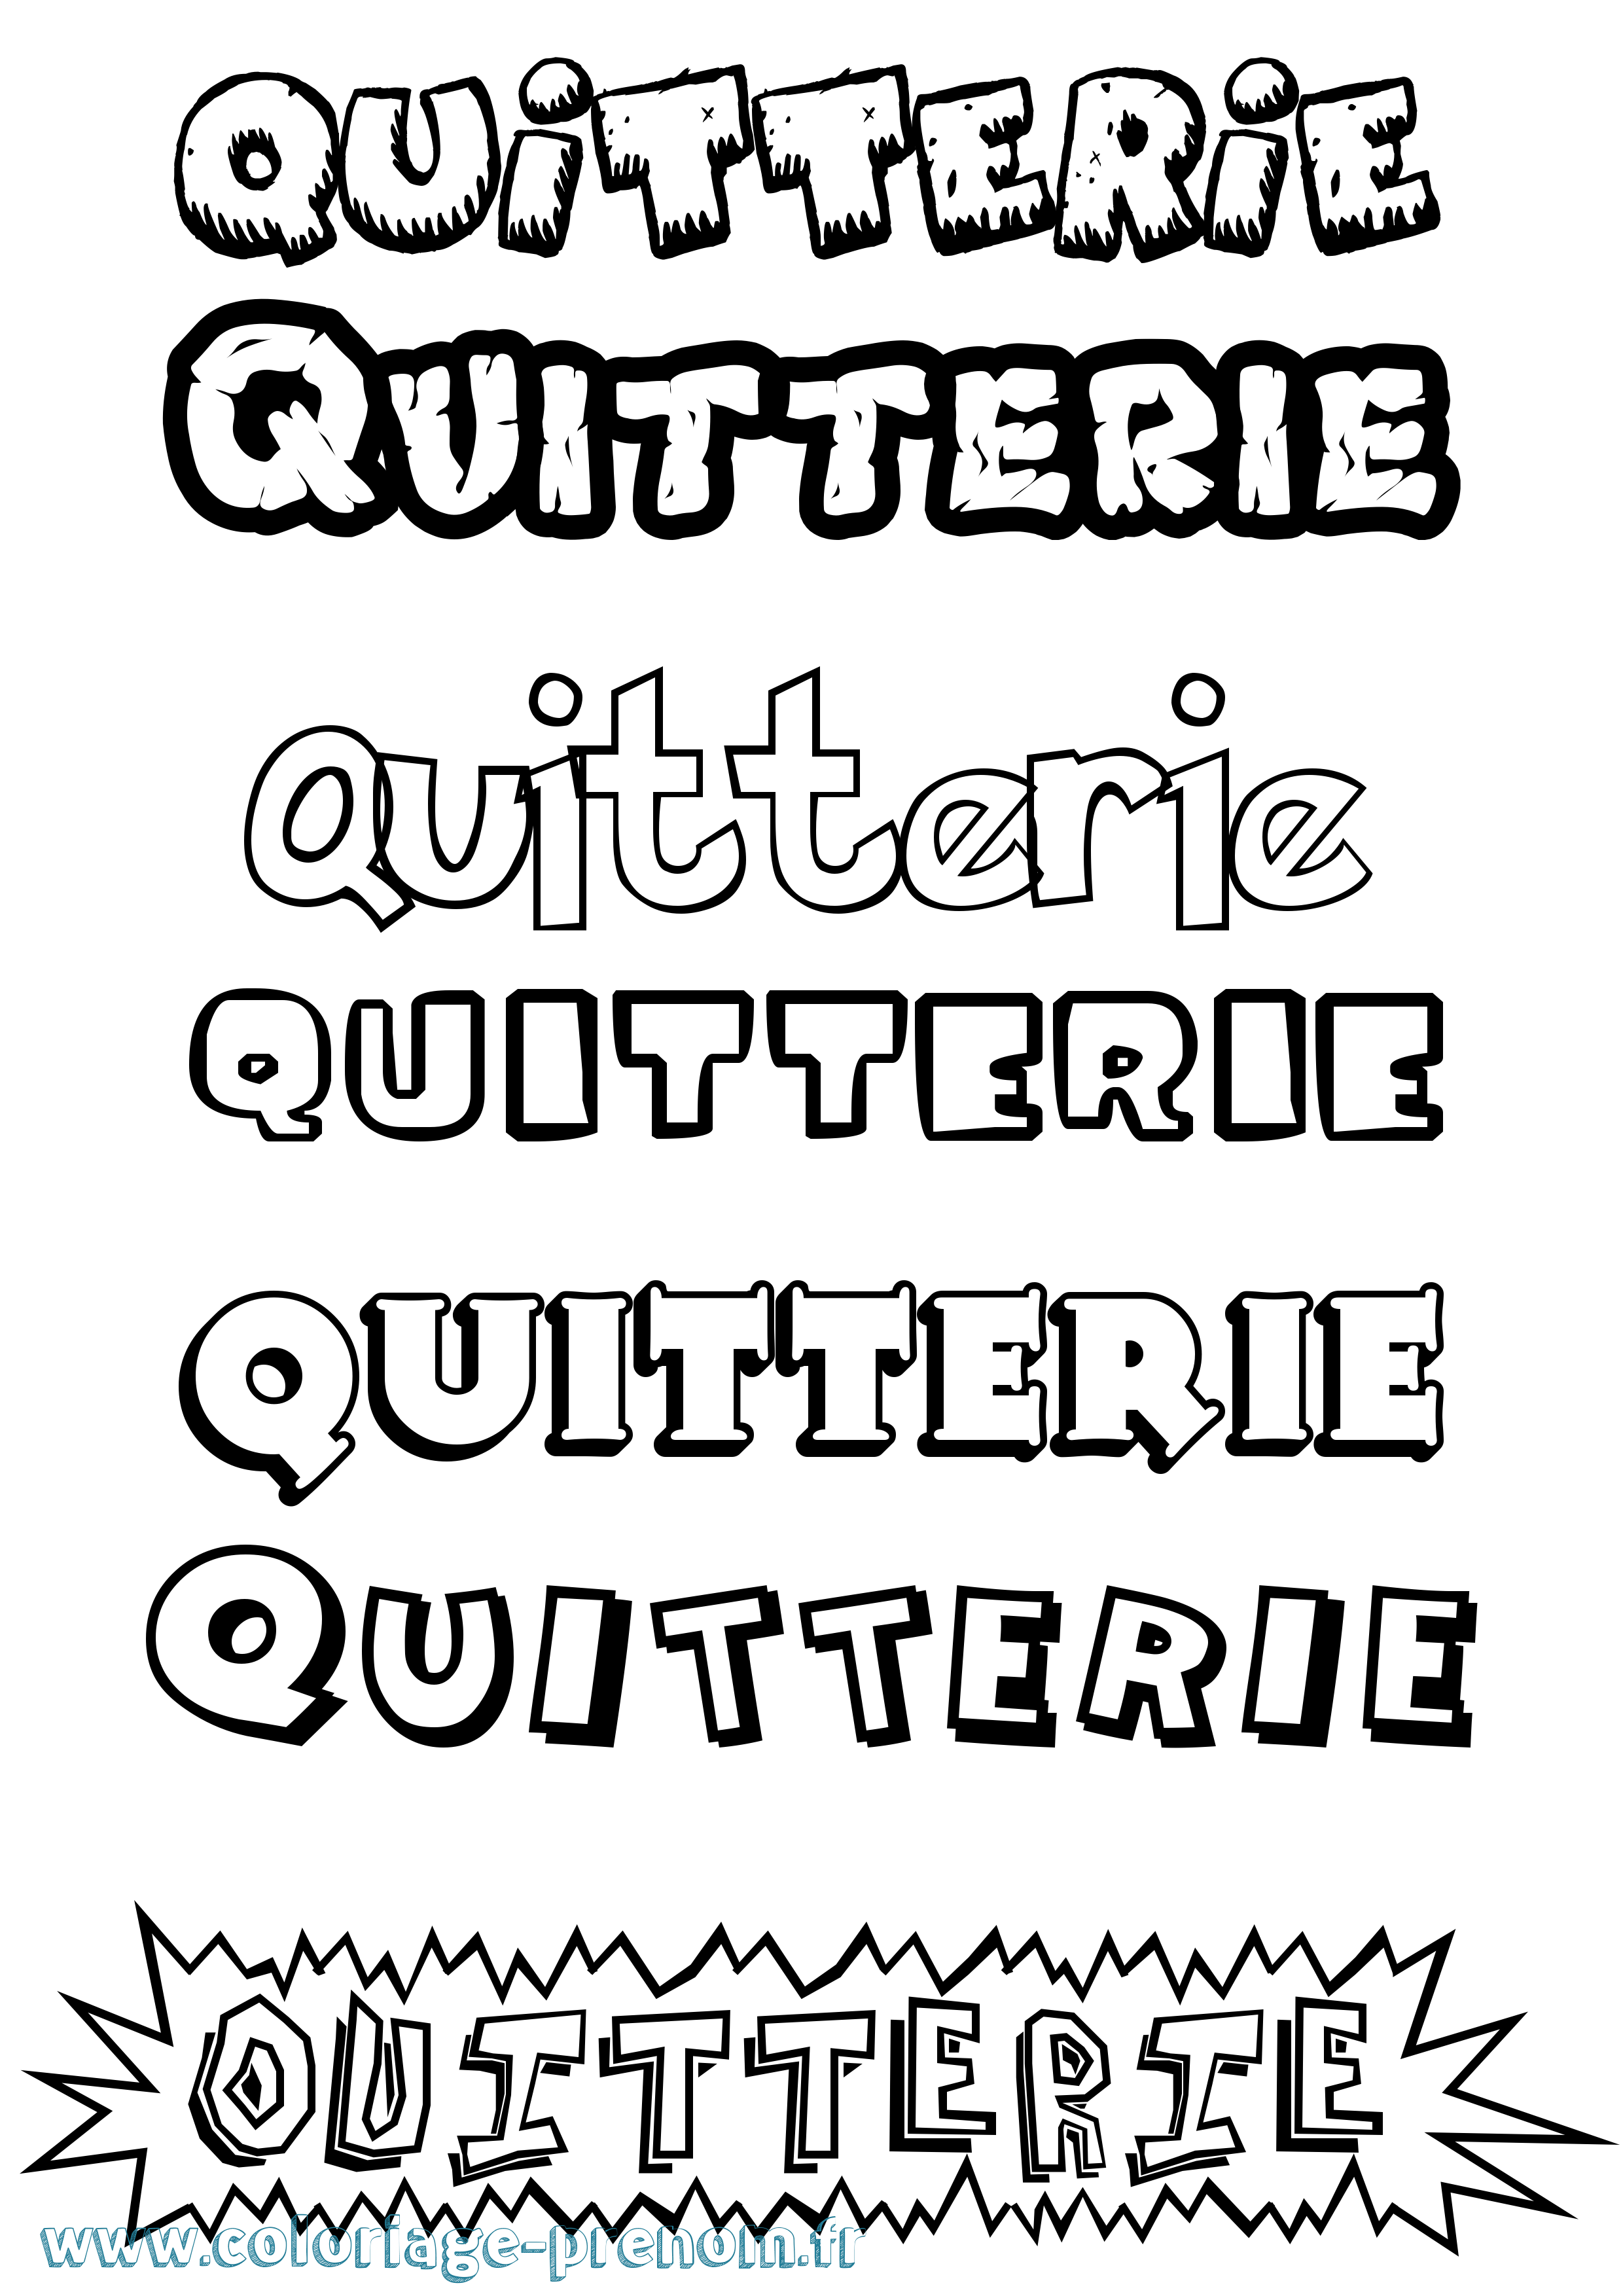 Coloriage prénom Quitterie